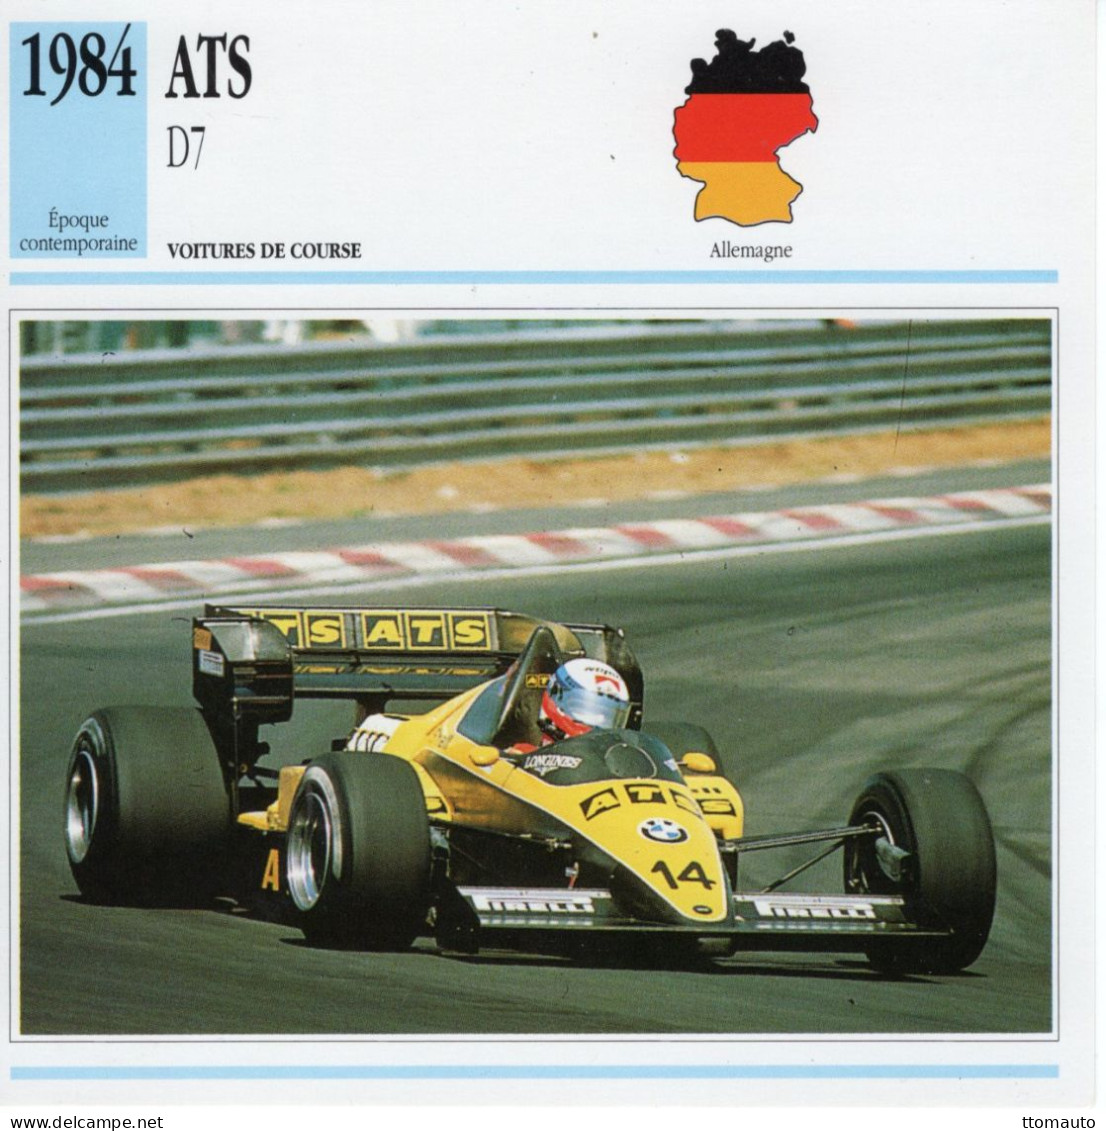 Fiche  -  Voiture De Course F1  -  ATS D7/01  (1984)  - Pilote: Manfred Winkelhock -  Carte De Collection - Automobili